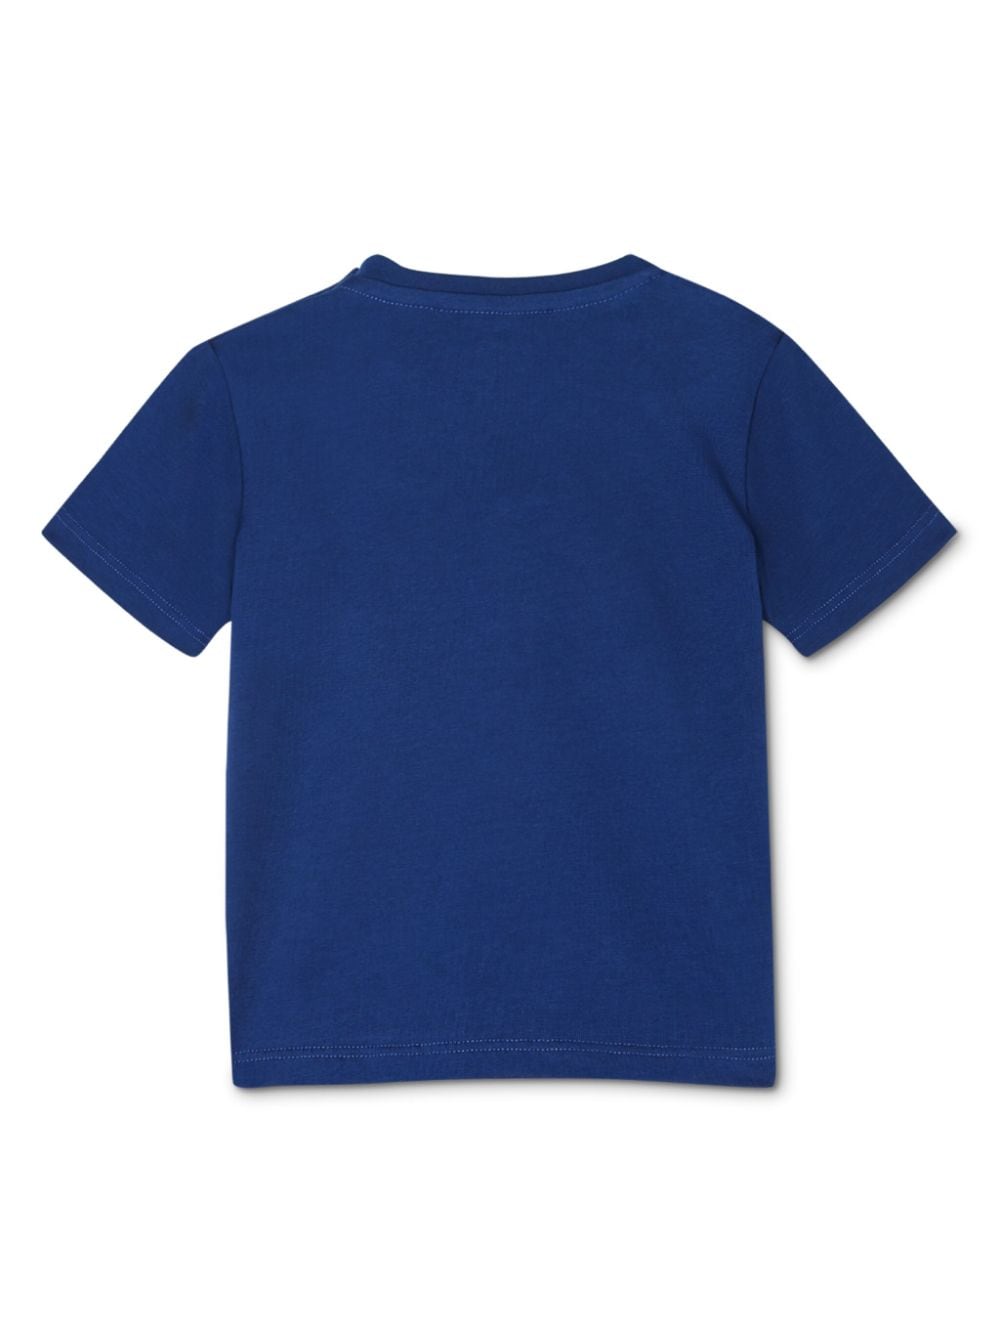 T-shirt per neonata in cotone blu